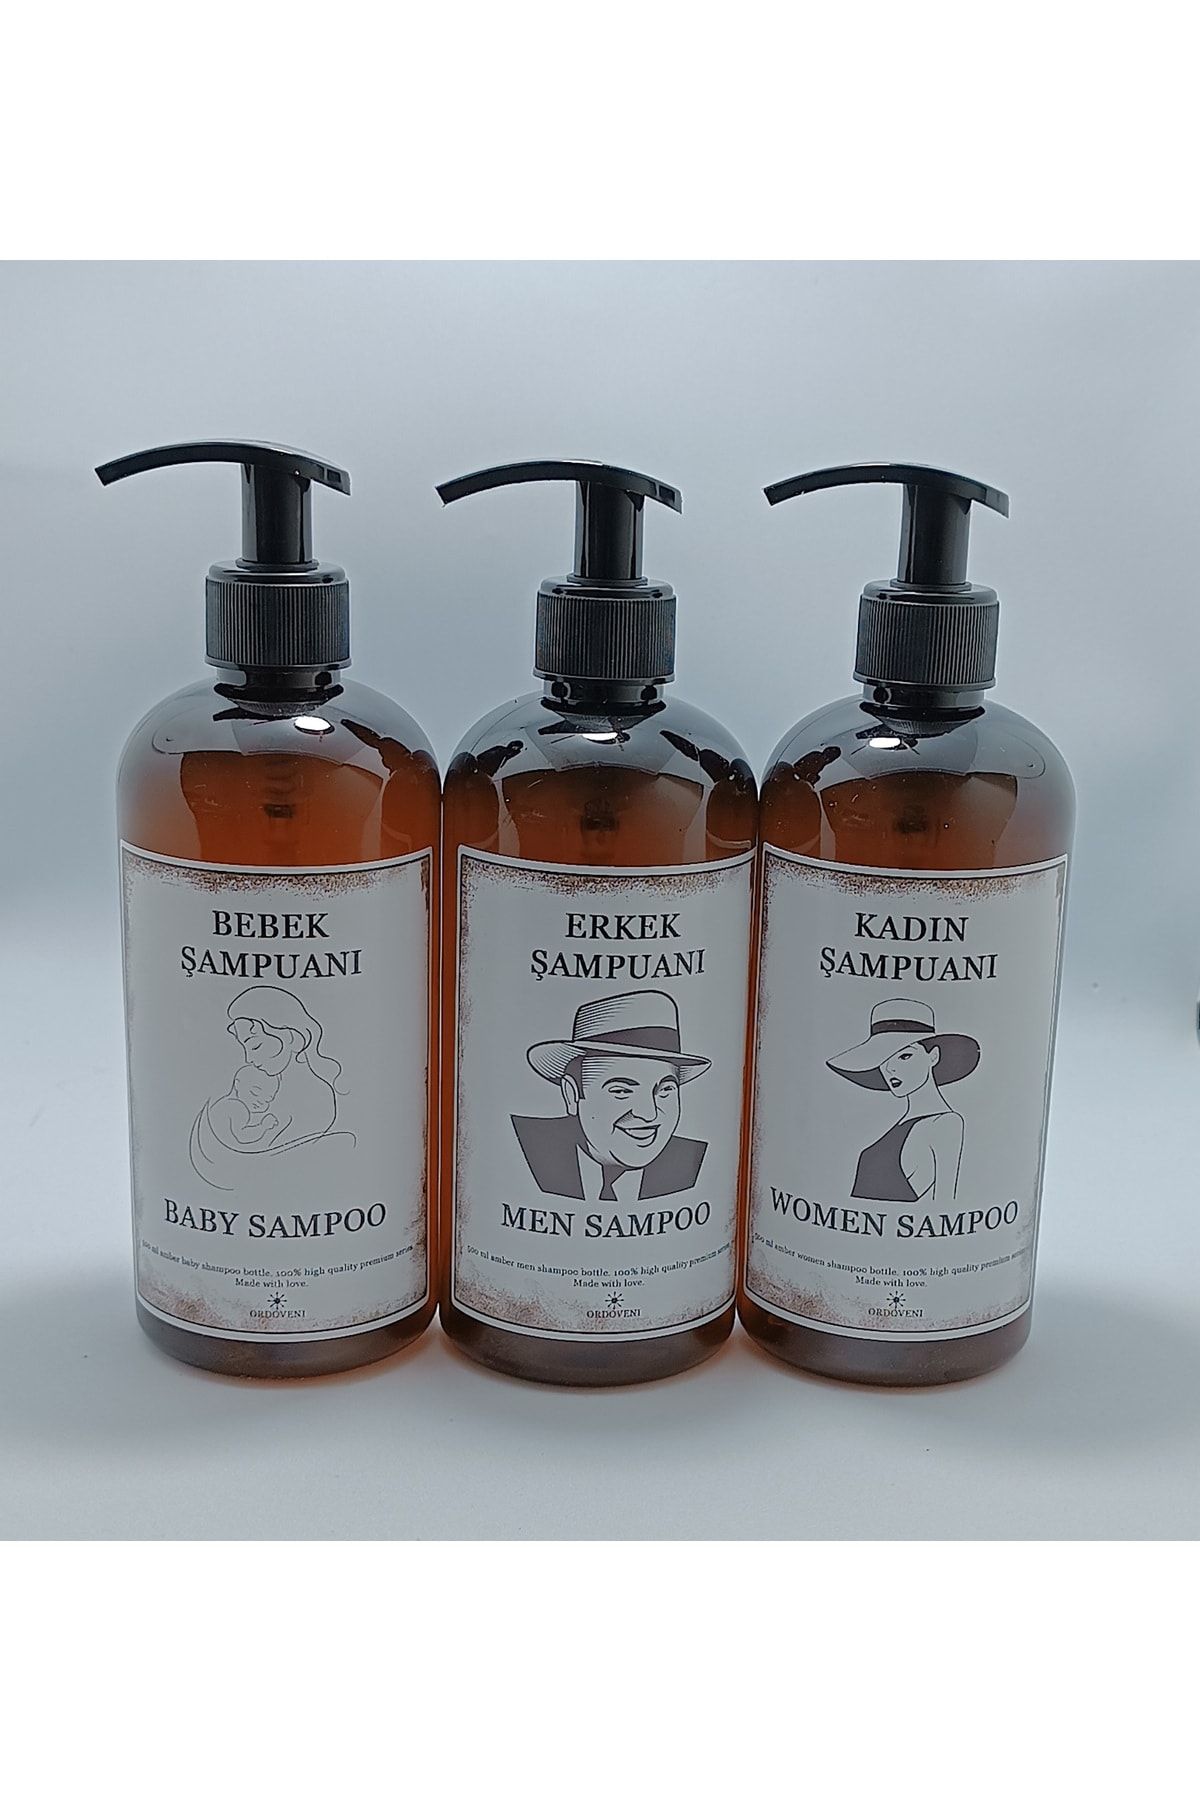 OrdoVeni Amber 3 Adet Şişe 500 ml -erkek Şampuan / Kadın Şampuan / Bebek Şampuan